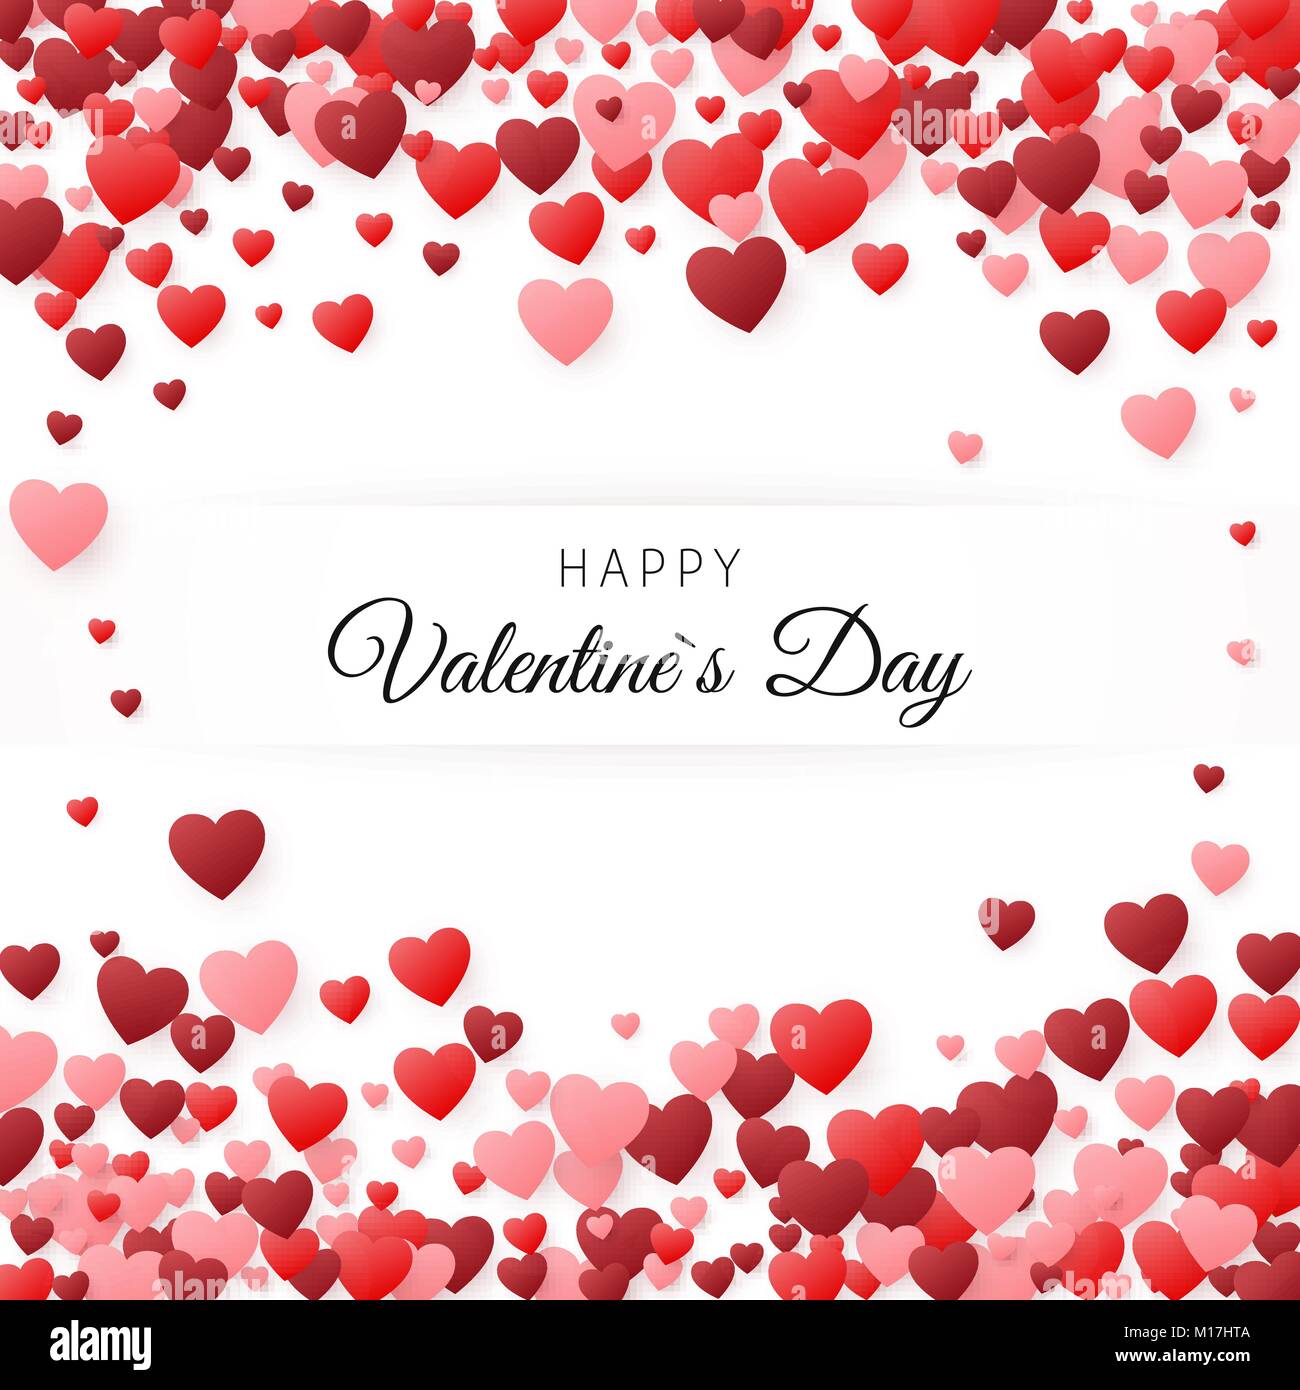 Happy Valentines Tag Grußkarte. Grußkarte Abdeckung Vorlage. Hintergrund mit Herzen mit Platz zur Beschriftung gefüllt. Vector Illustration Stock Vektor